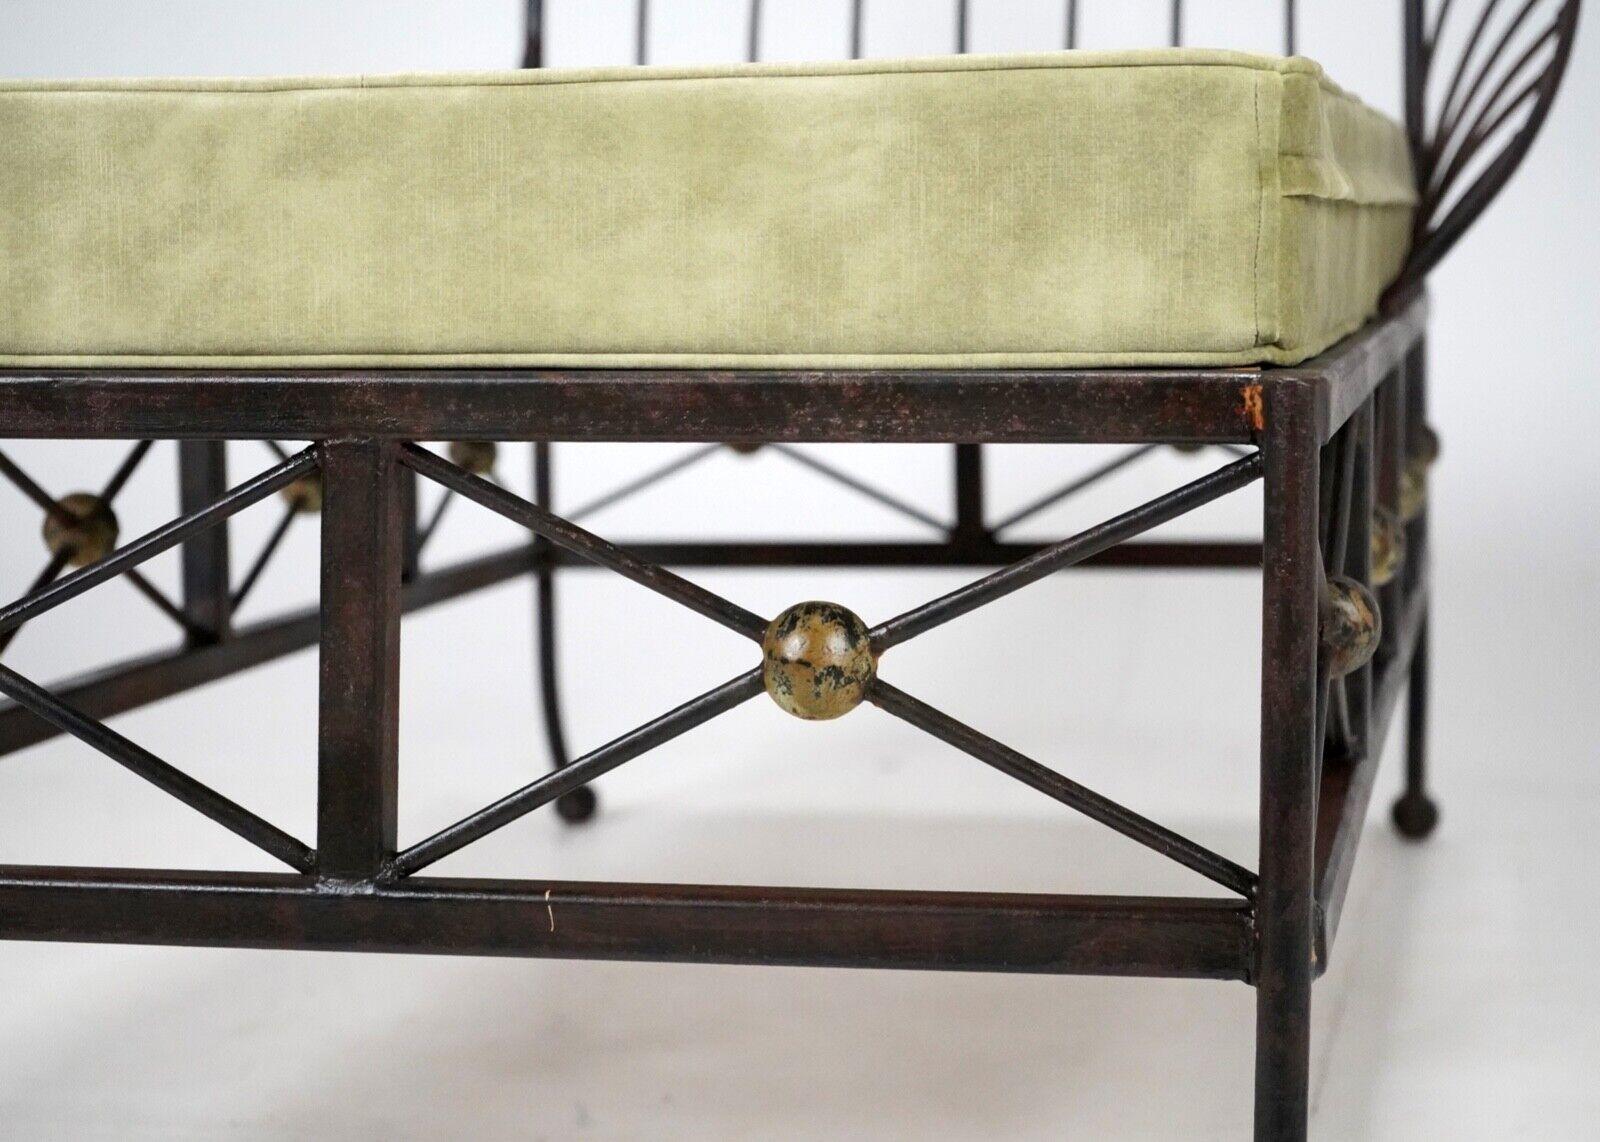 Vintage Französisch Box Stahl Metall Day Bed, Sun Lounger, Chaise Lounge Green Seat (20. Jahrhundert)